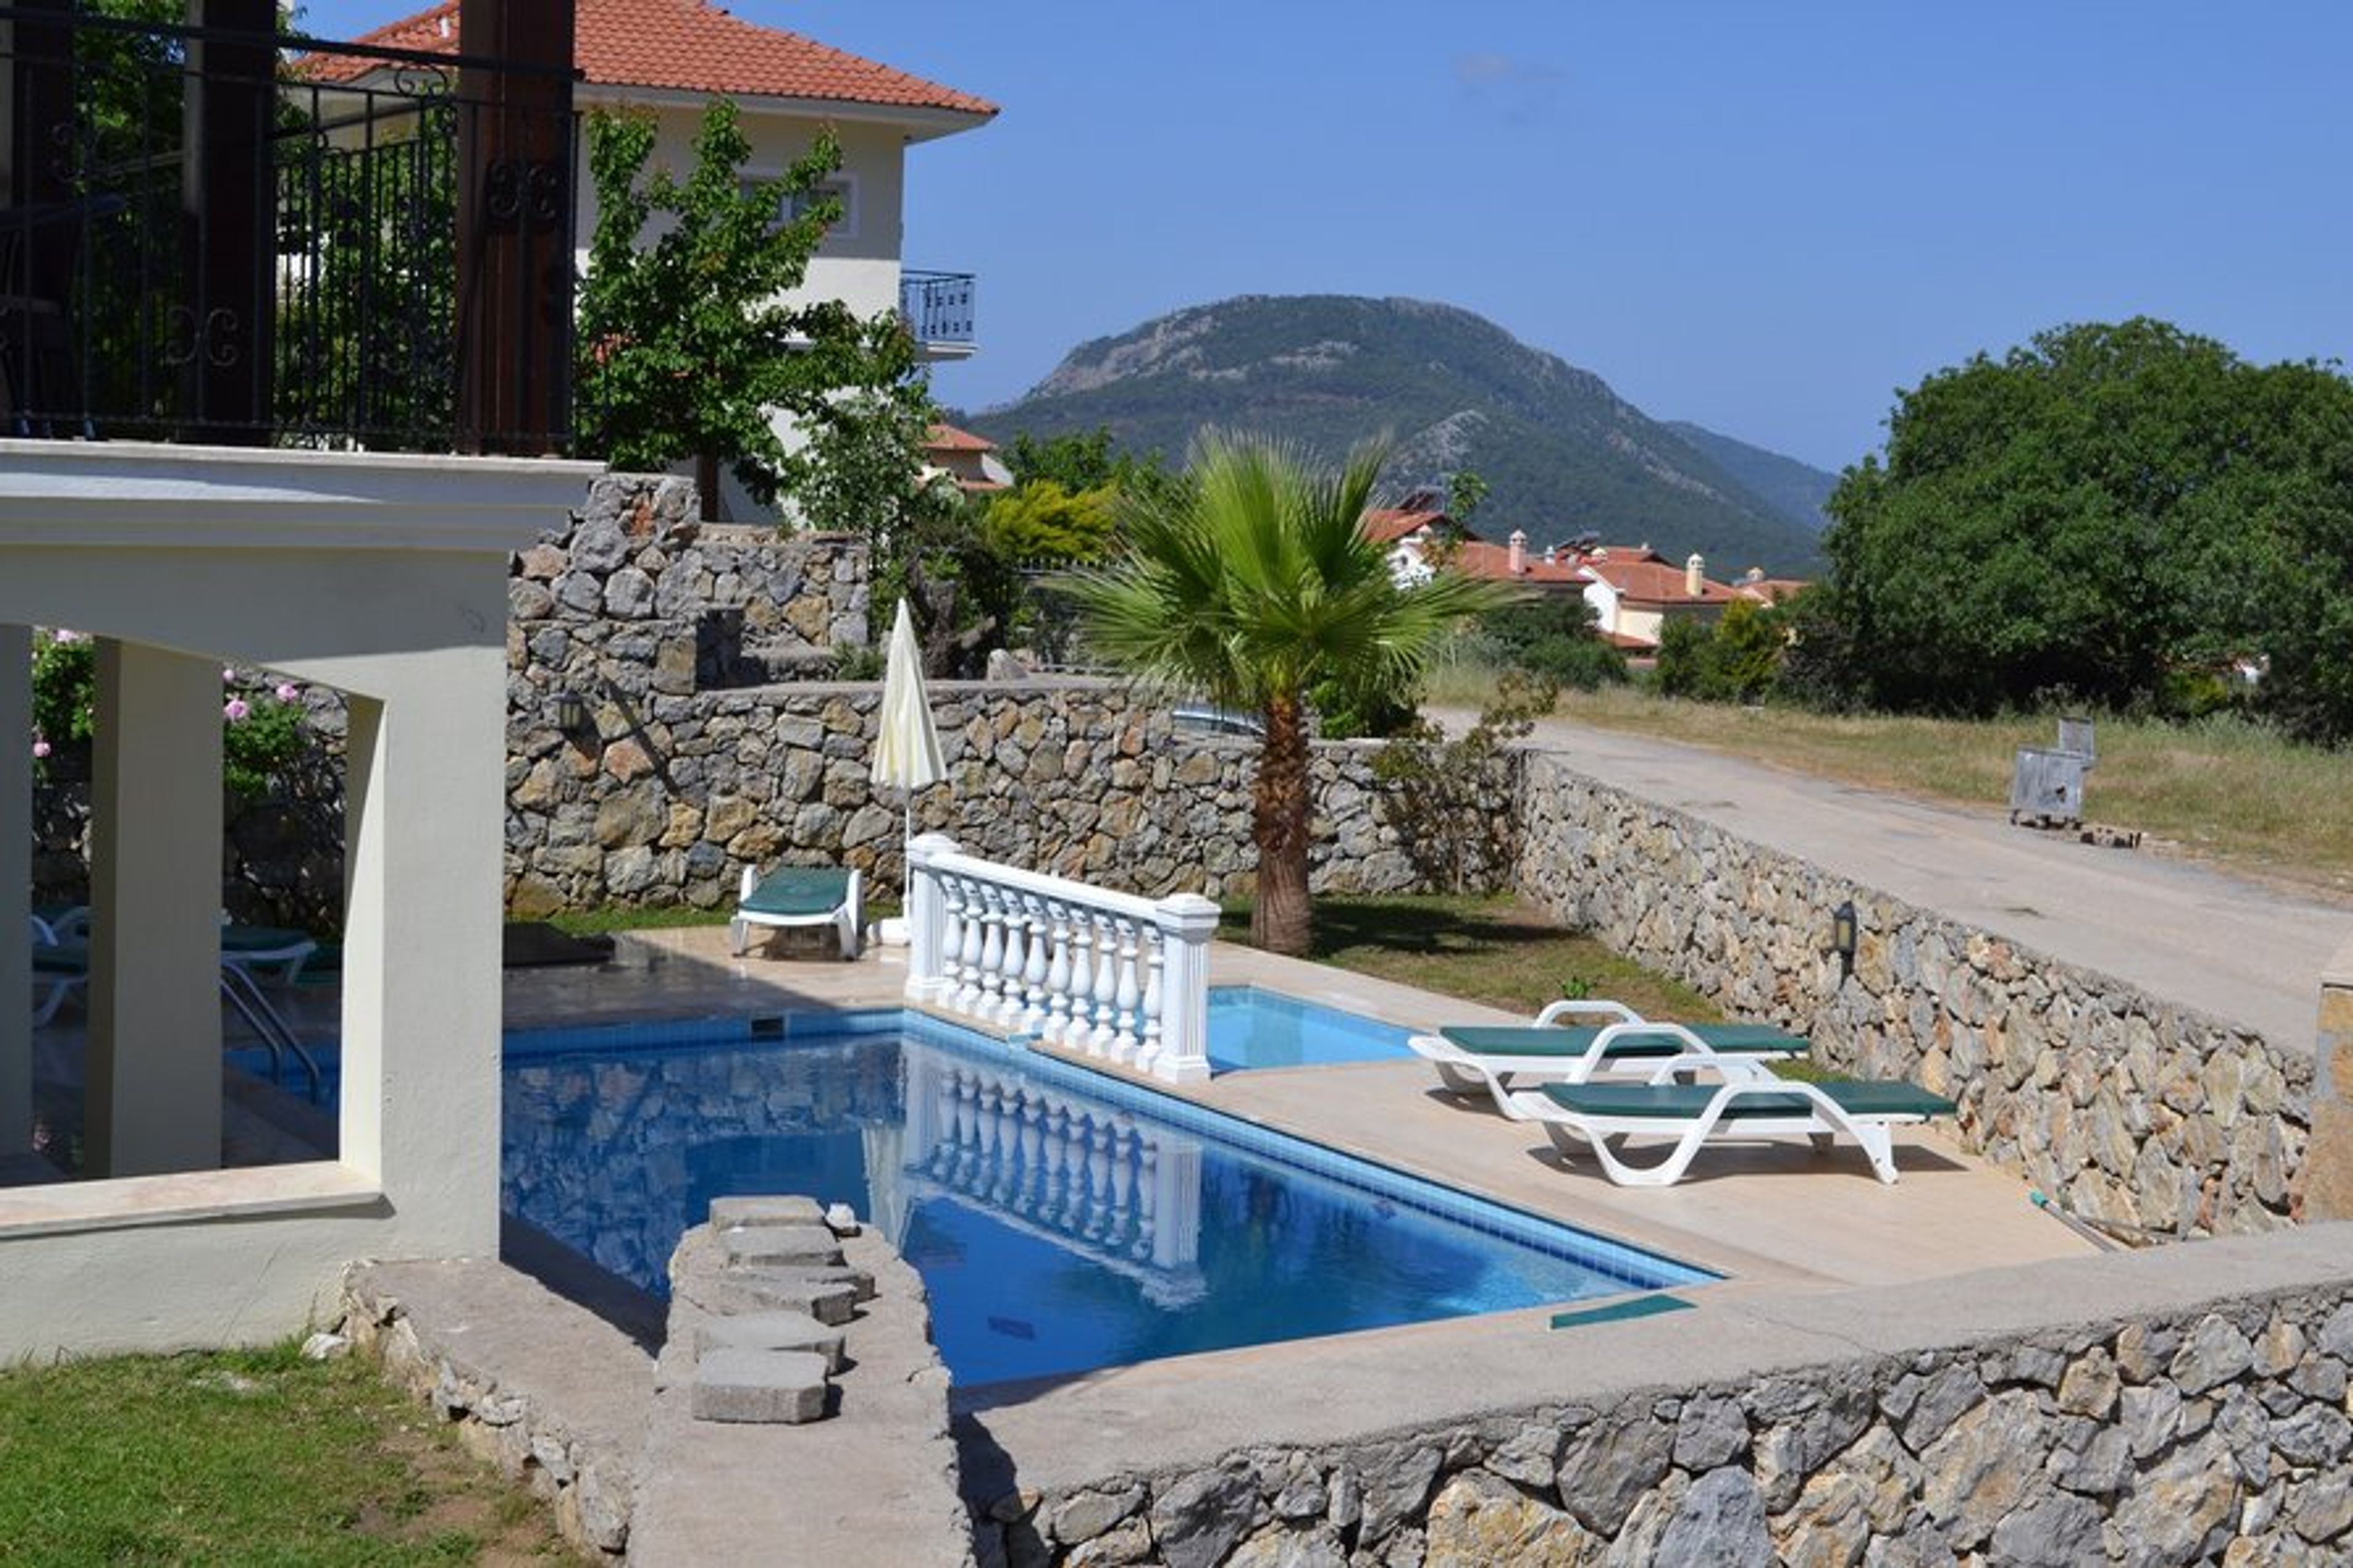 Akaysa villa private pool area